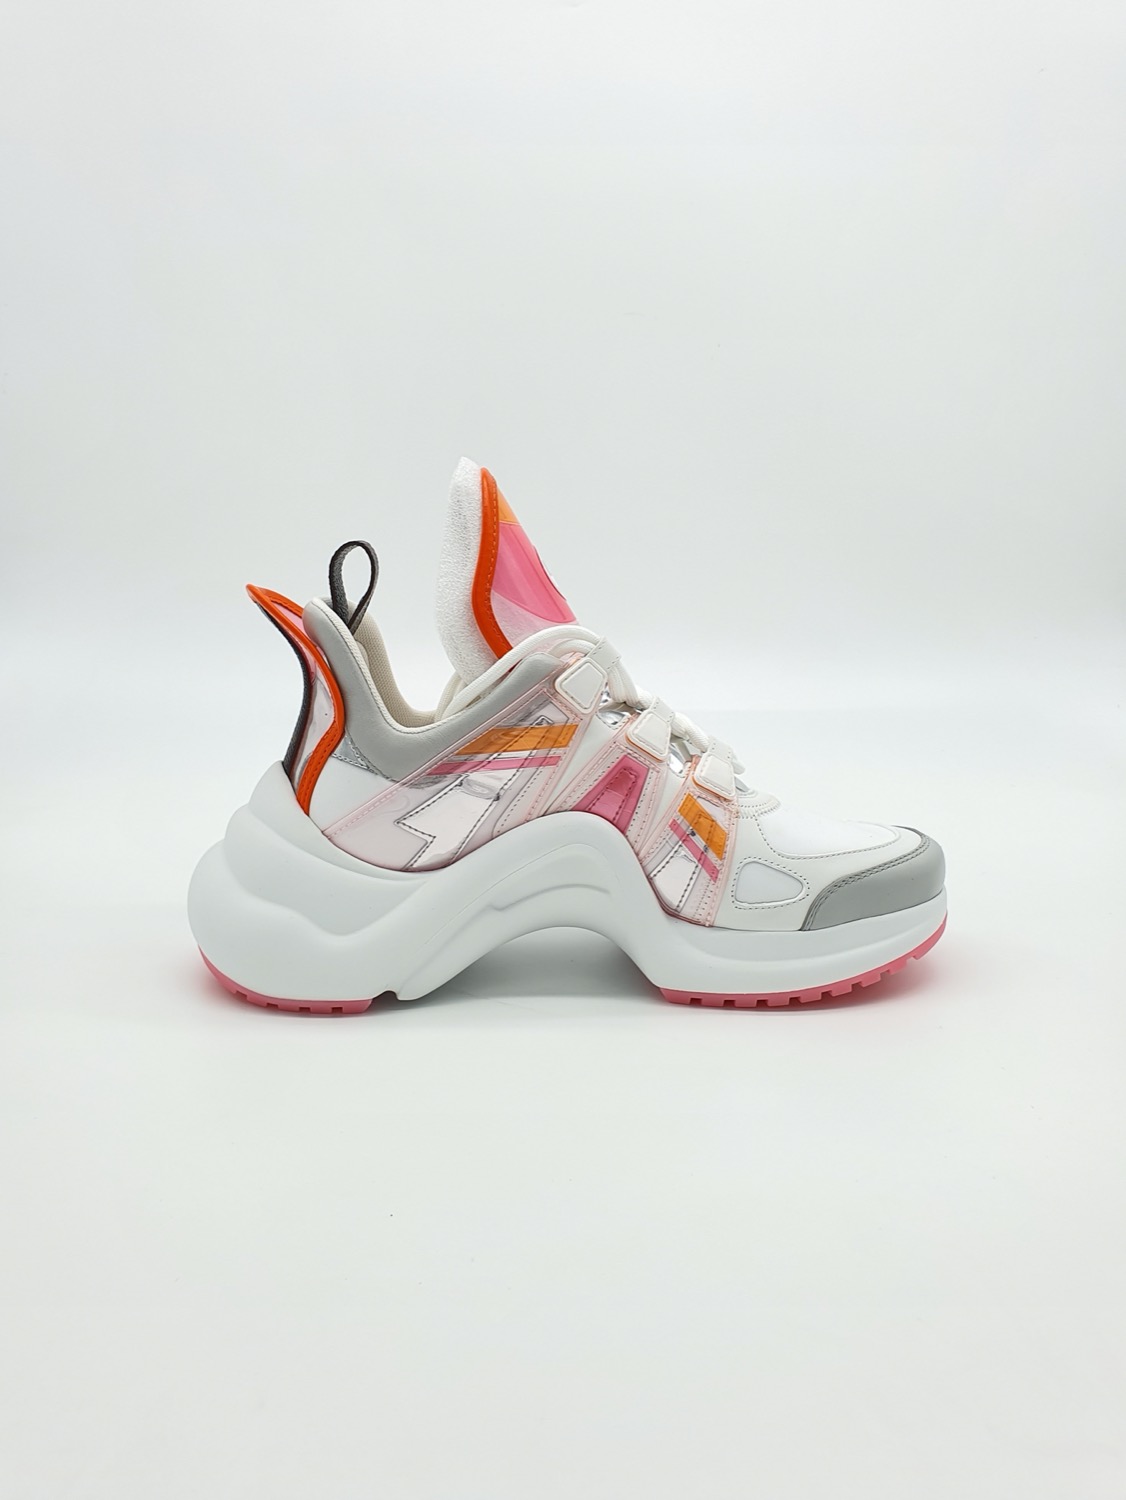 Louis Vuitton, Shoes, Louis Vuitton Archlight Sneaker Rose Orange 375